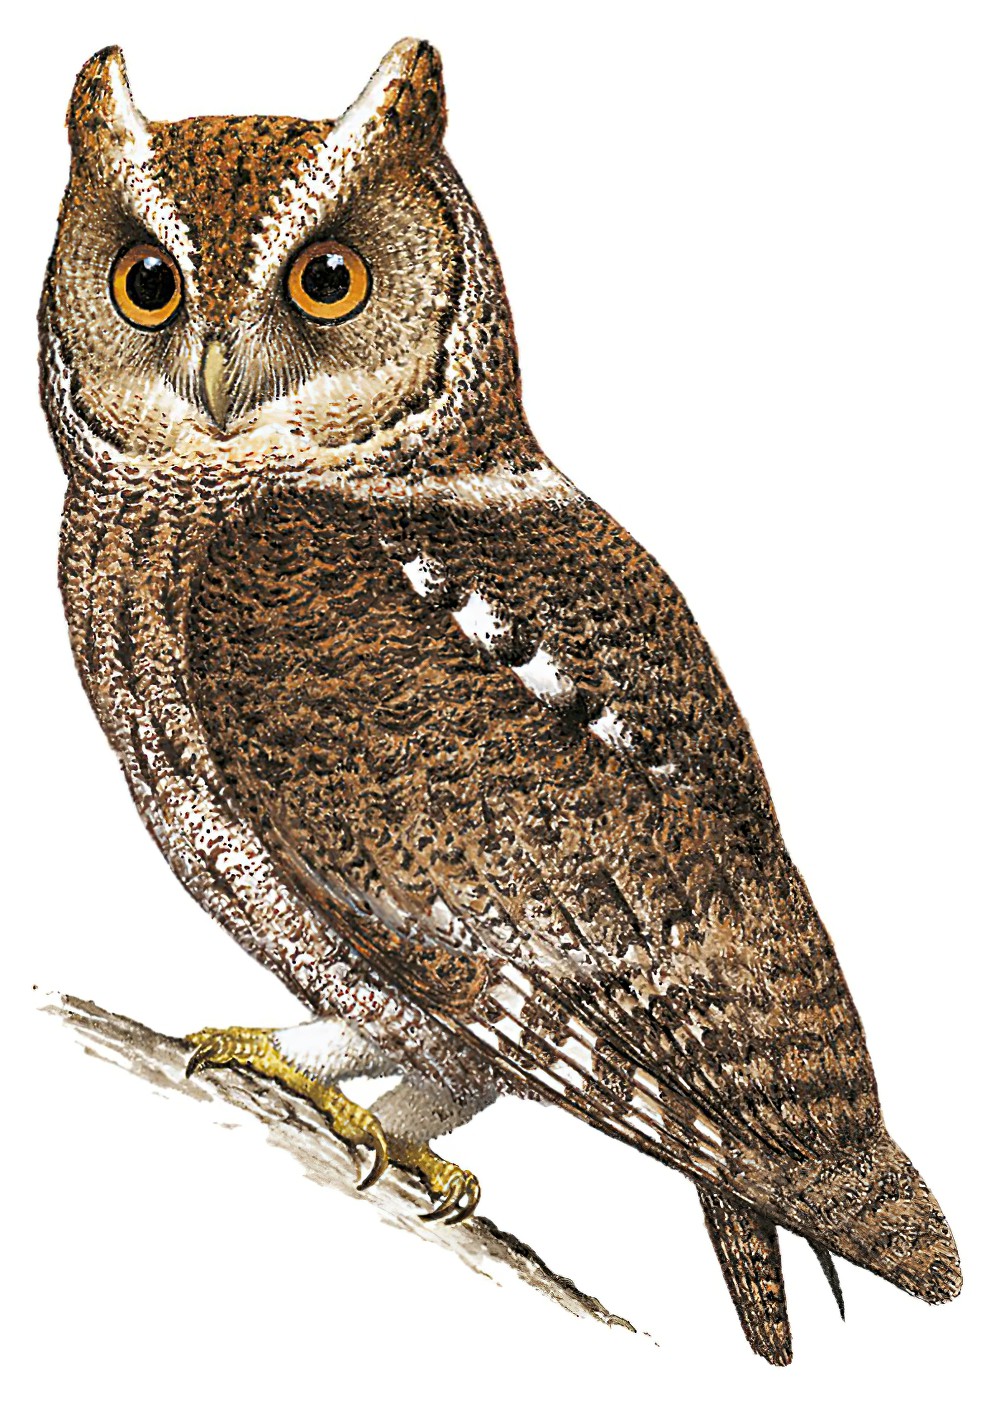 Rajah Scops-Owl / Otus brookii